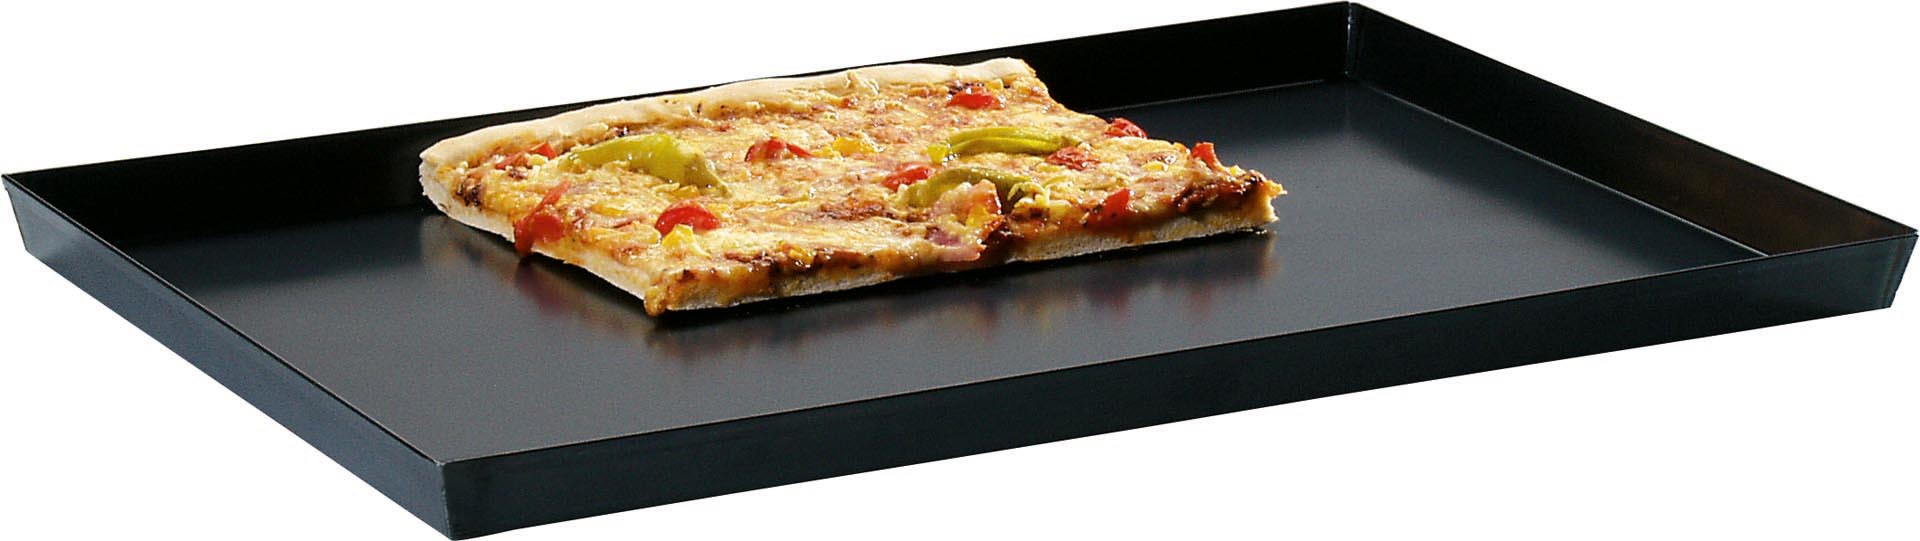 Pizzablech 60x40x3cm